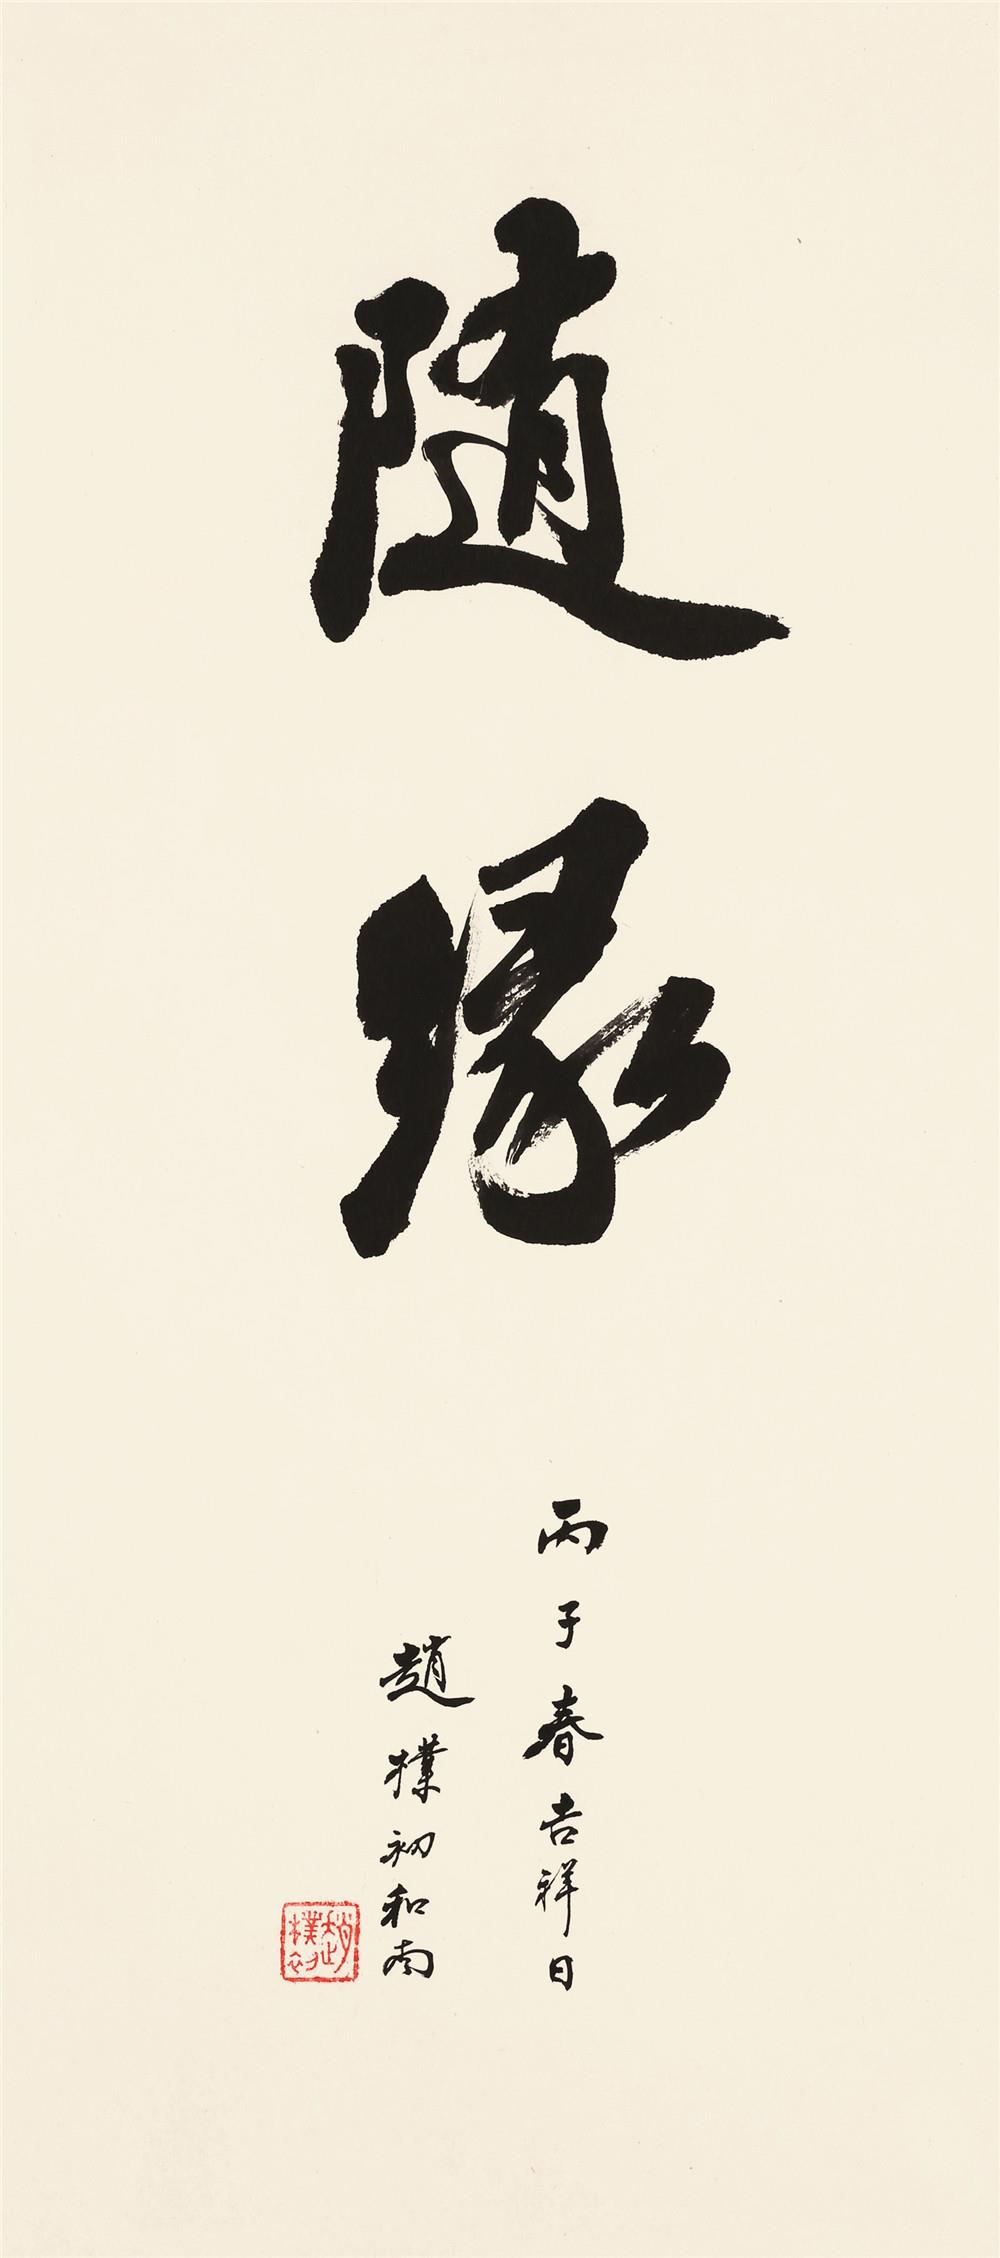 赵朴初(1907～2000)行书"随缘"